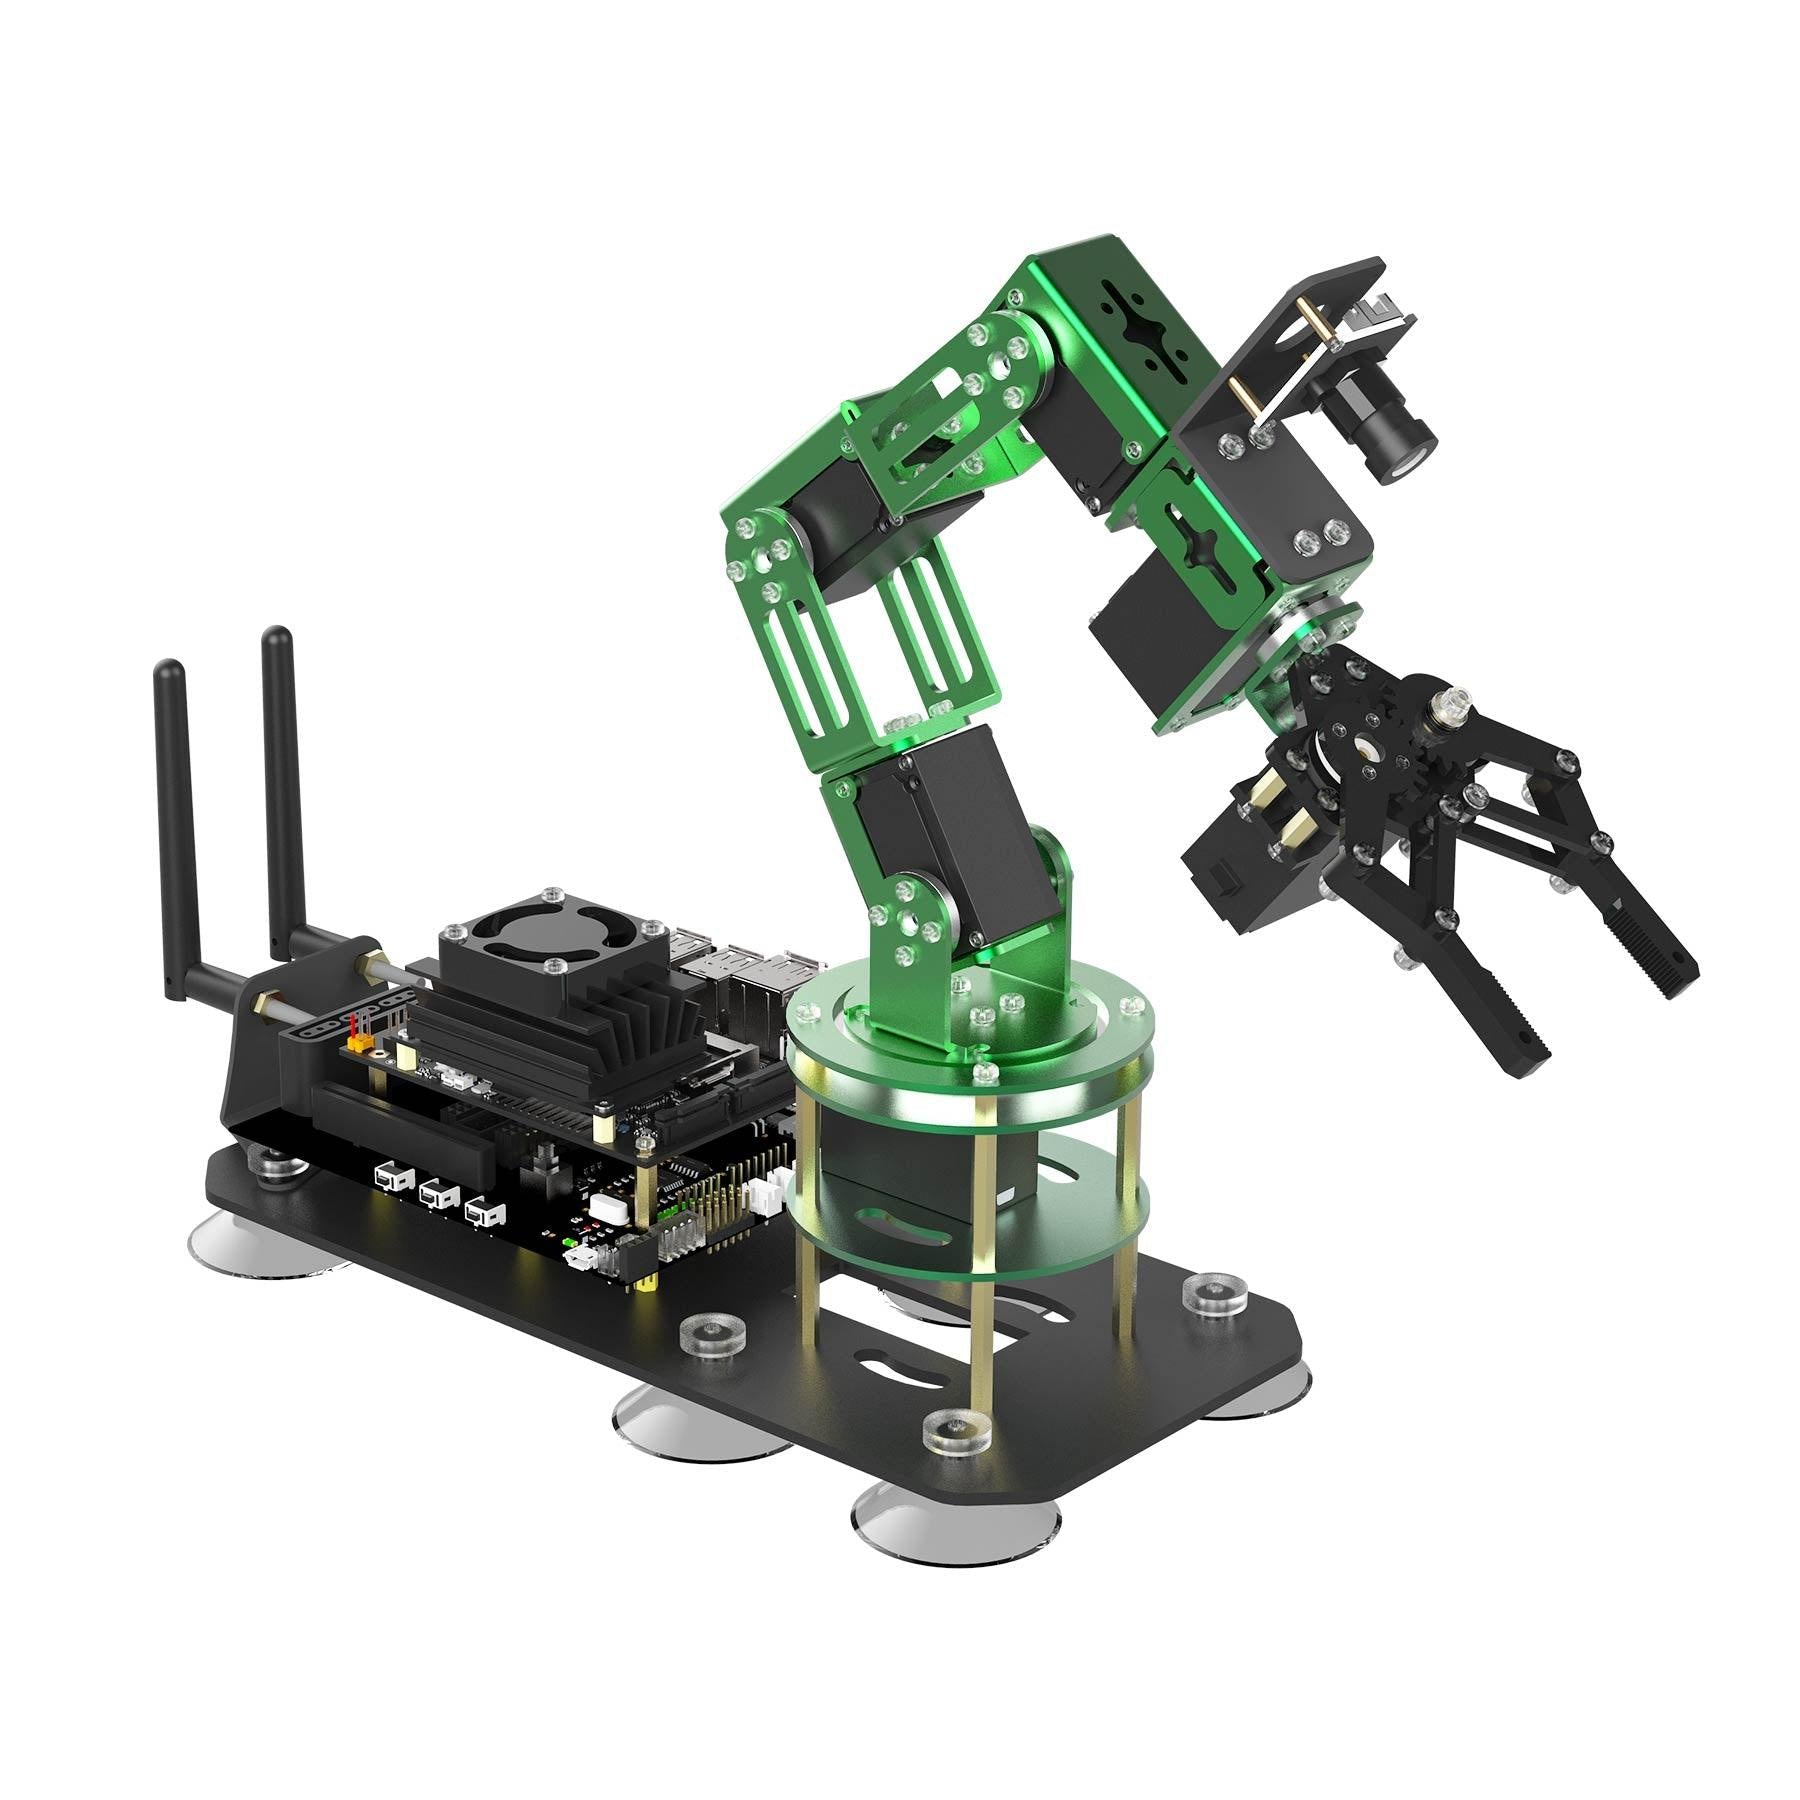 Yahboom DOFBOT AI Vision Robotic Arm ROS STEM Education Python Programming Robot for Jetson NANO 4GB(B01/SUB)